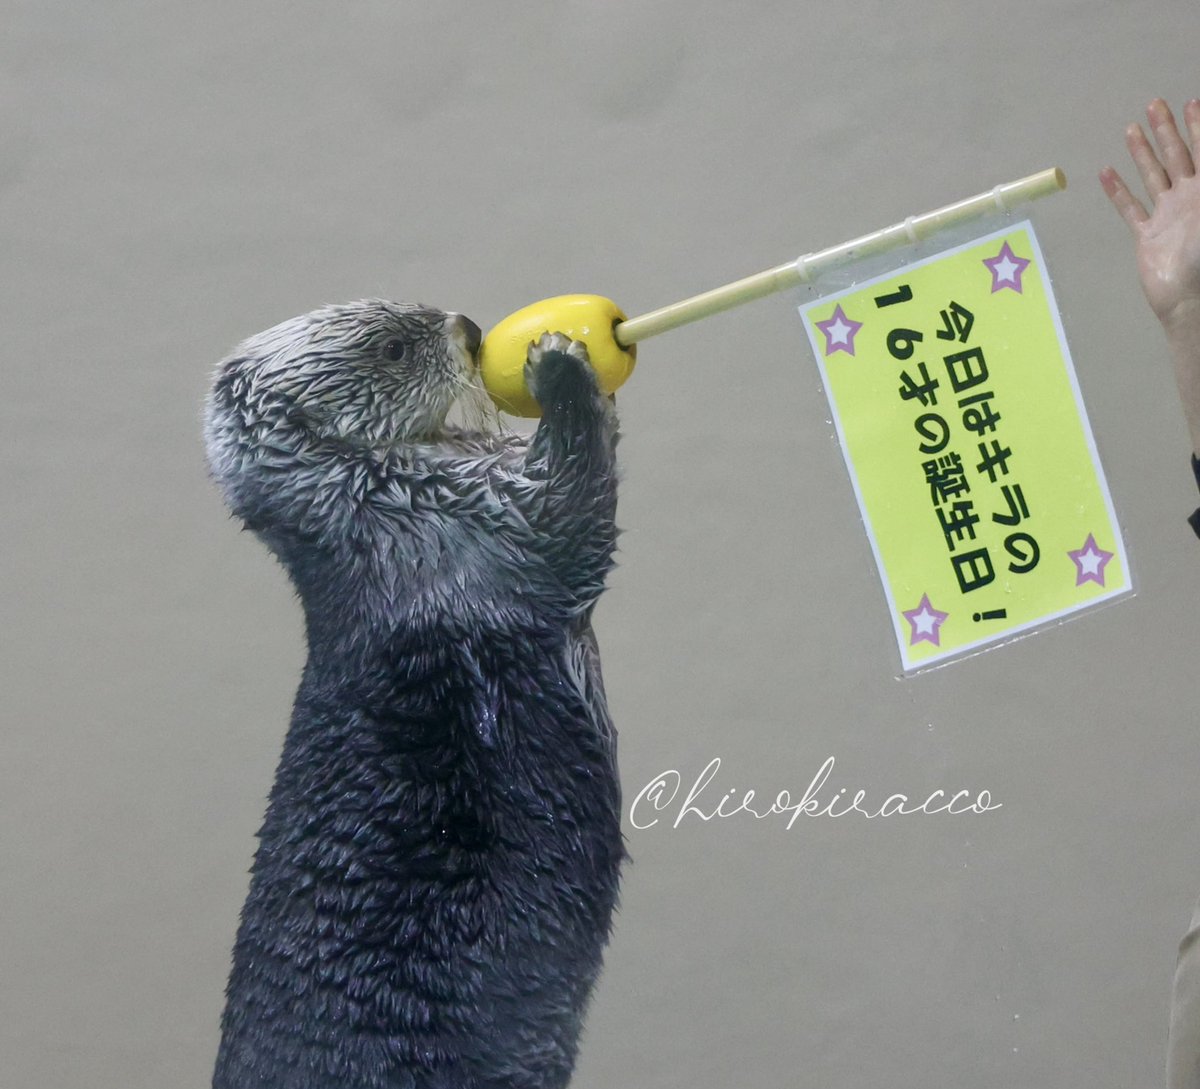 はーい皆さん
キラが横断しまーす！
◯▼※△☆▲※◎★●

#鳥羽水族館　#ラッコ　#seaotter 
#キラ　#ラッコのキラちゃん
#キラちゃん大好き